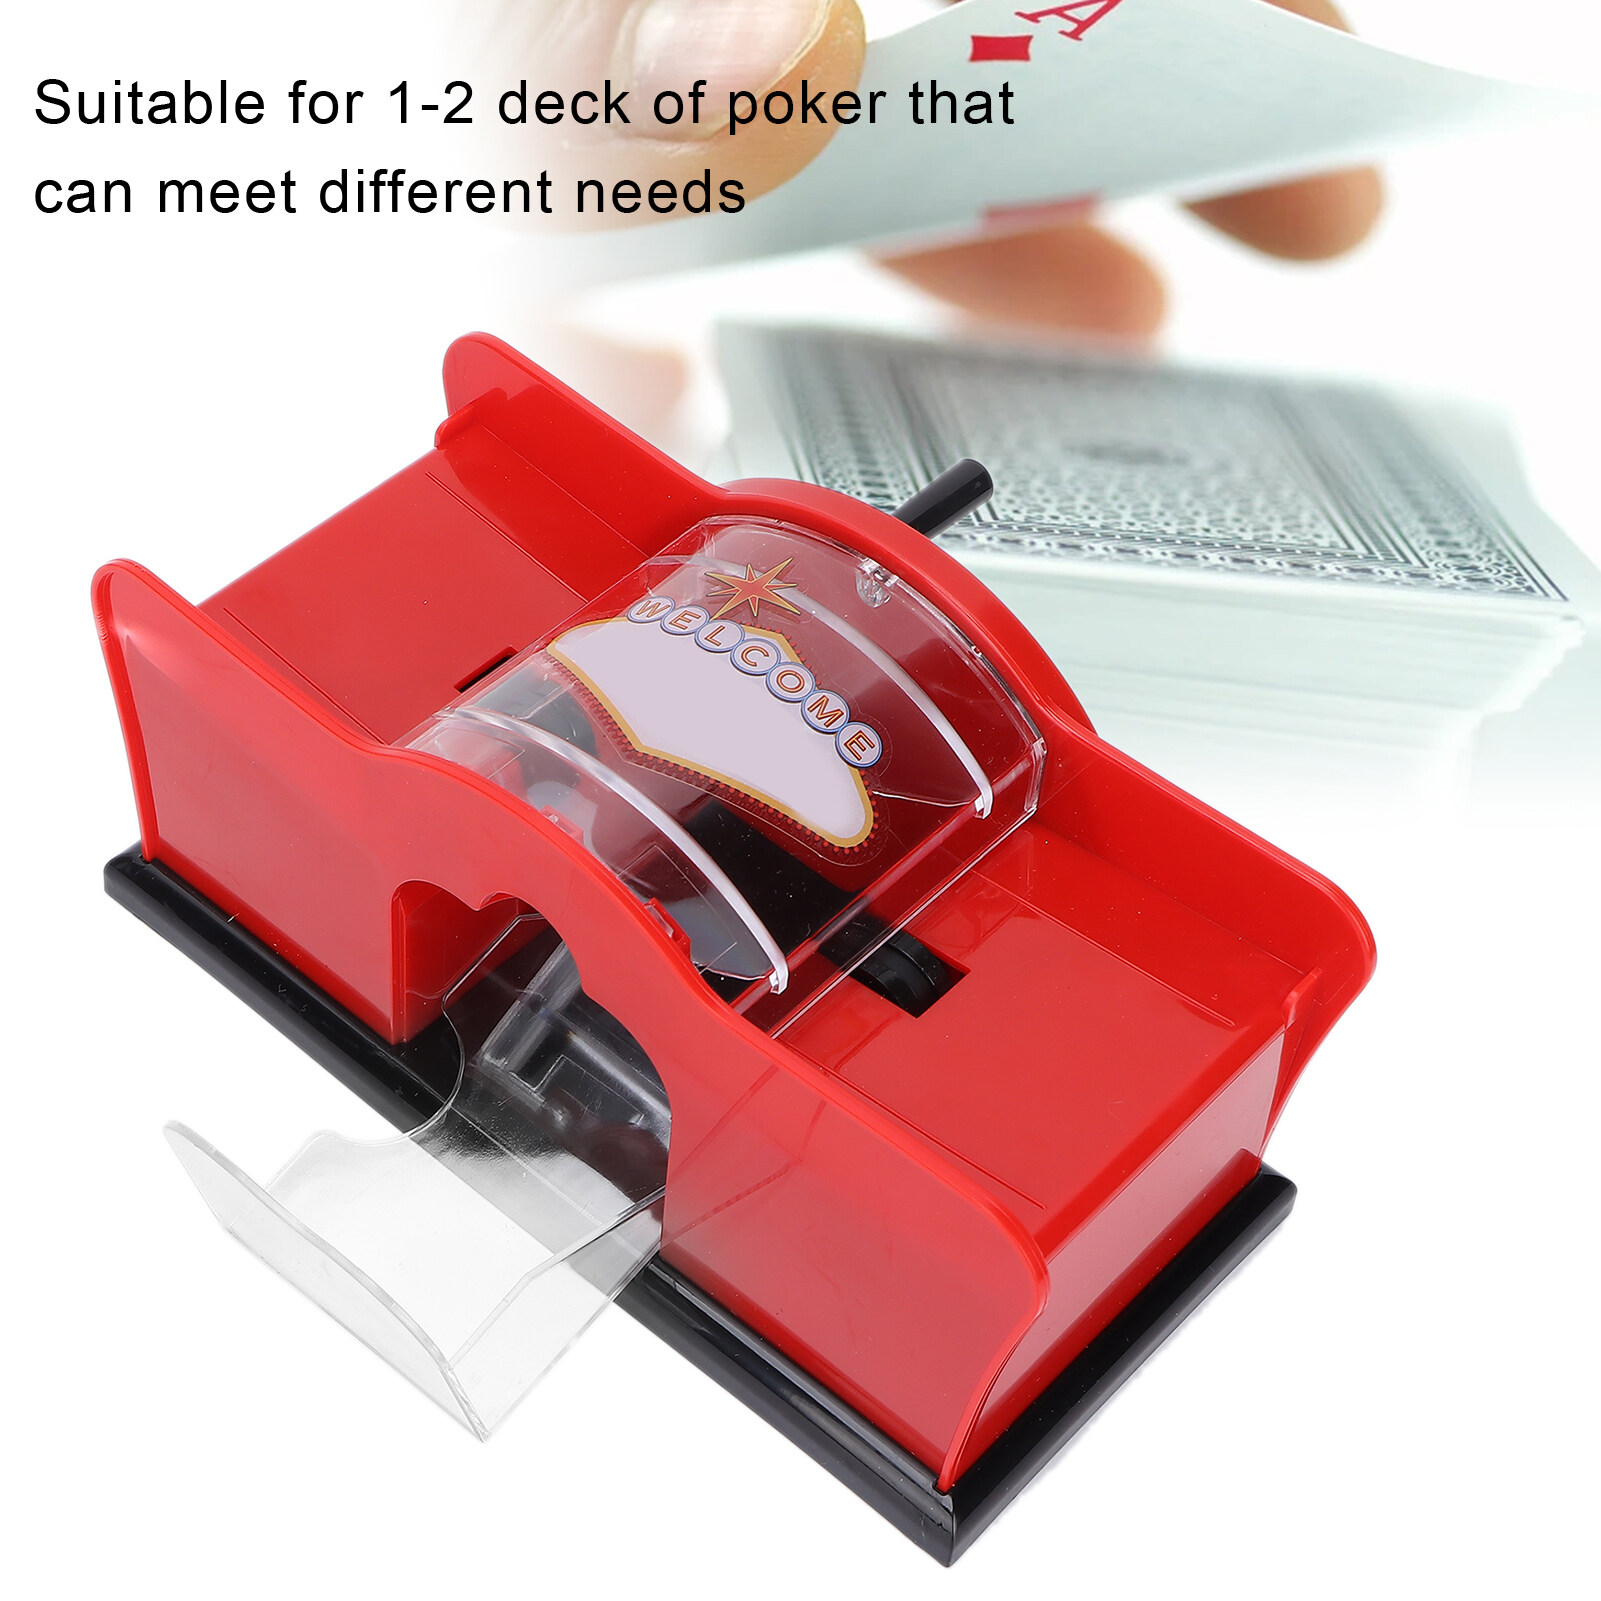 Manual Card Shuffler Poker Playing Card Casino Card Shuffling Machine red Manual Shuffler Tool for Playing Cards 1‑2 Deck Manual Card Mixer 